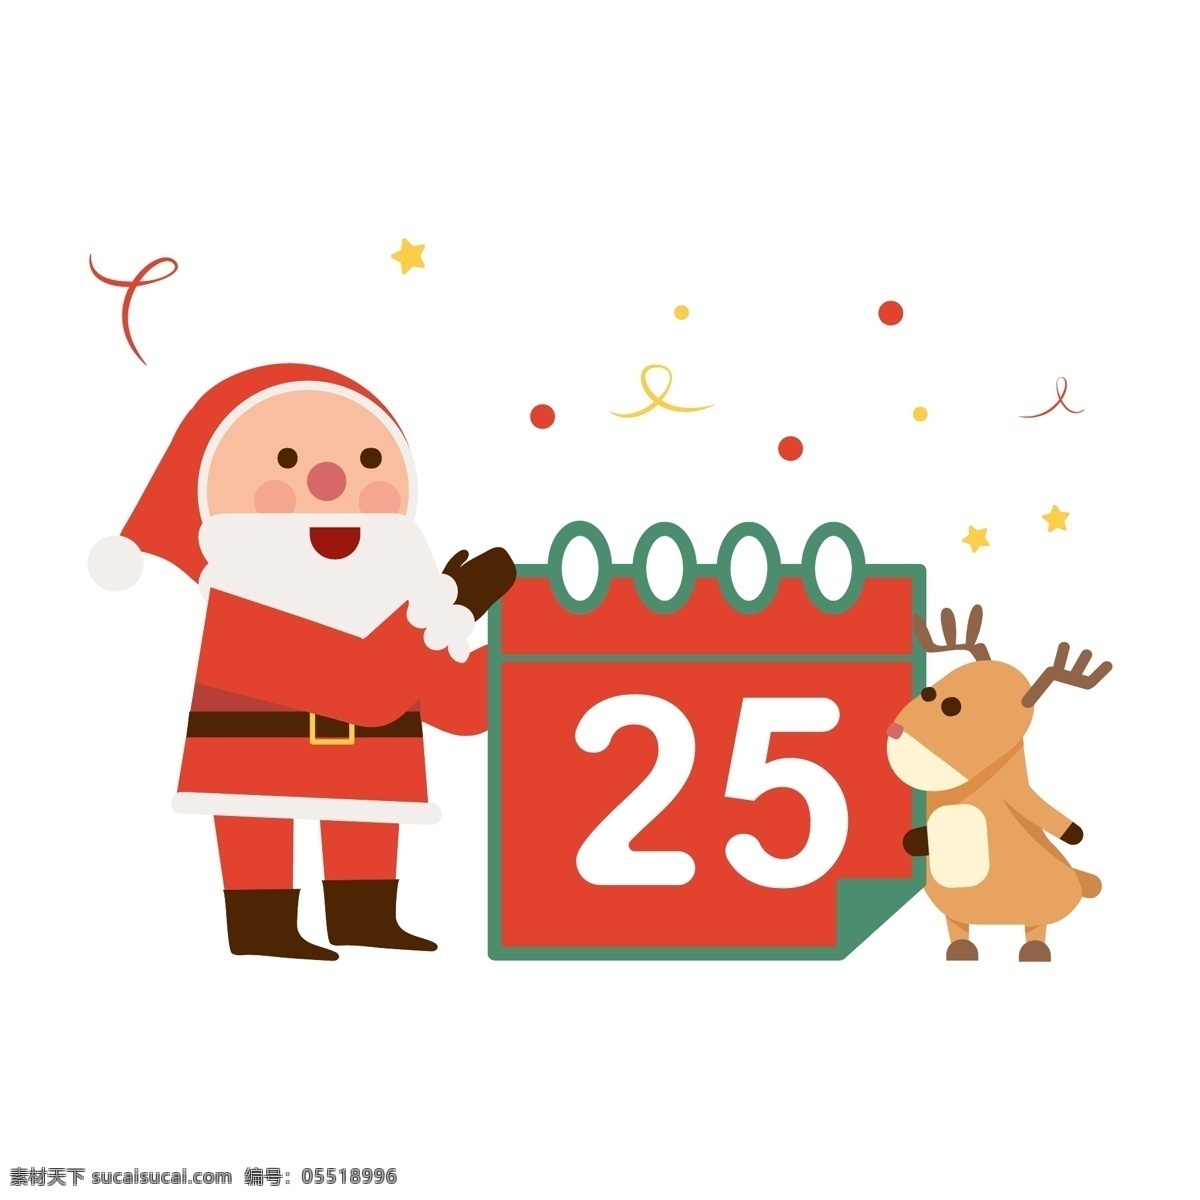 向量 可爱 圣诞 圣诞老人 平四 后卫 快乐 绿色 红色 麋鹿 插图 日历 材料 节日 圣诞节